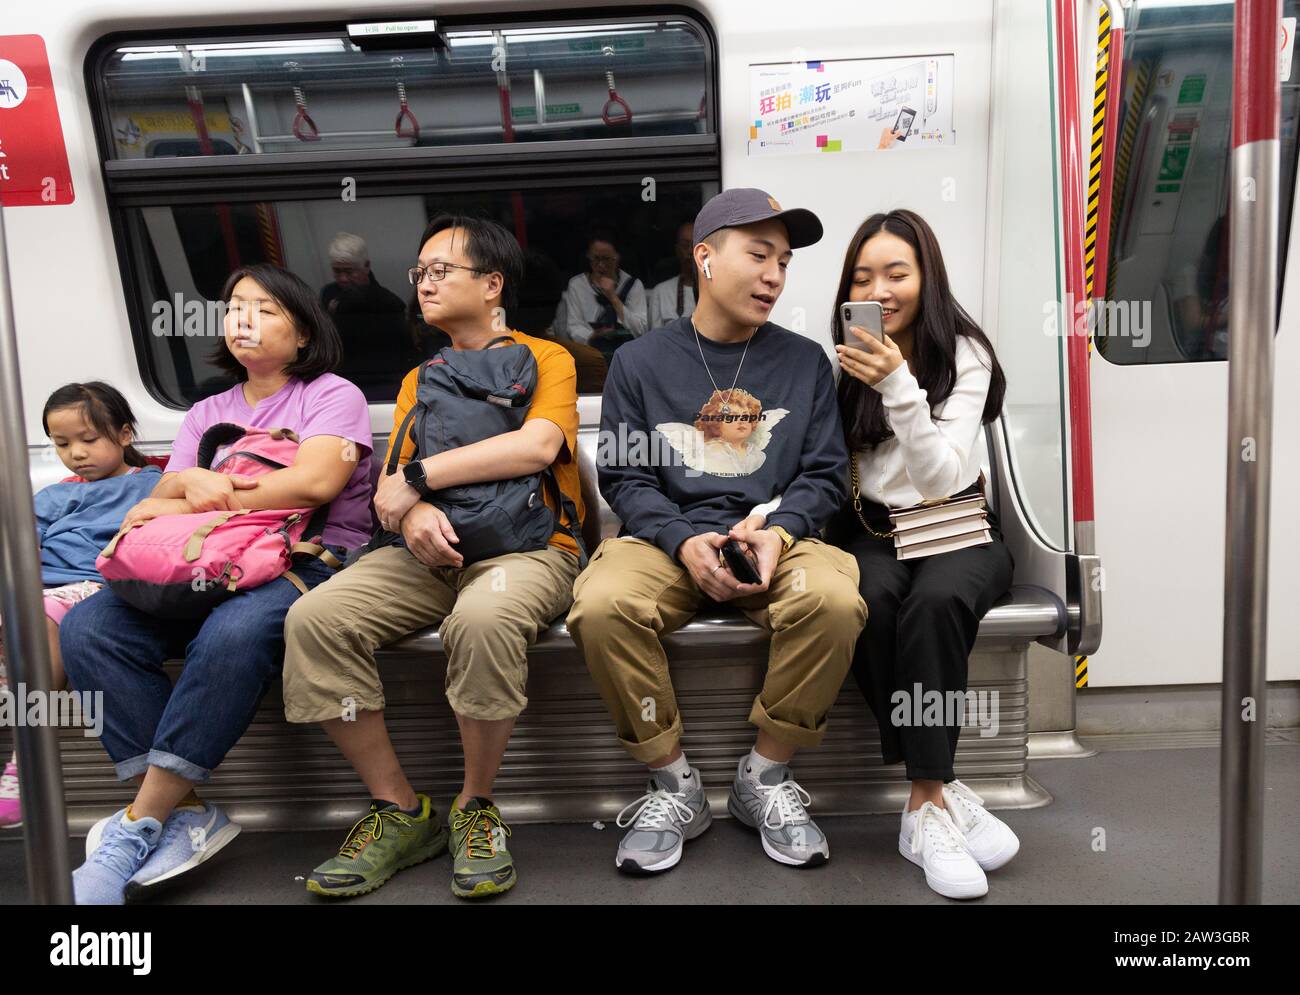 Hong Kong Lifestyle; Hong Kong Mass transit Railway - les gens locaux assis dans un intérieur de transport, Hong Kong MTR, Hong Kong Asie Banque D'Images